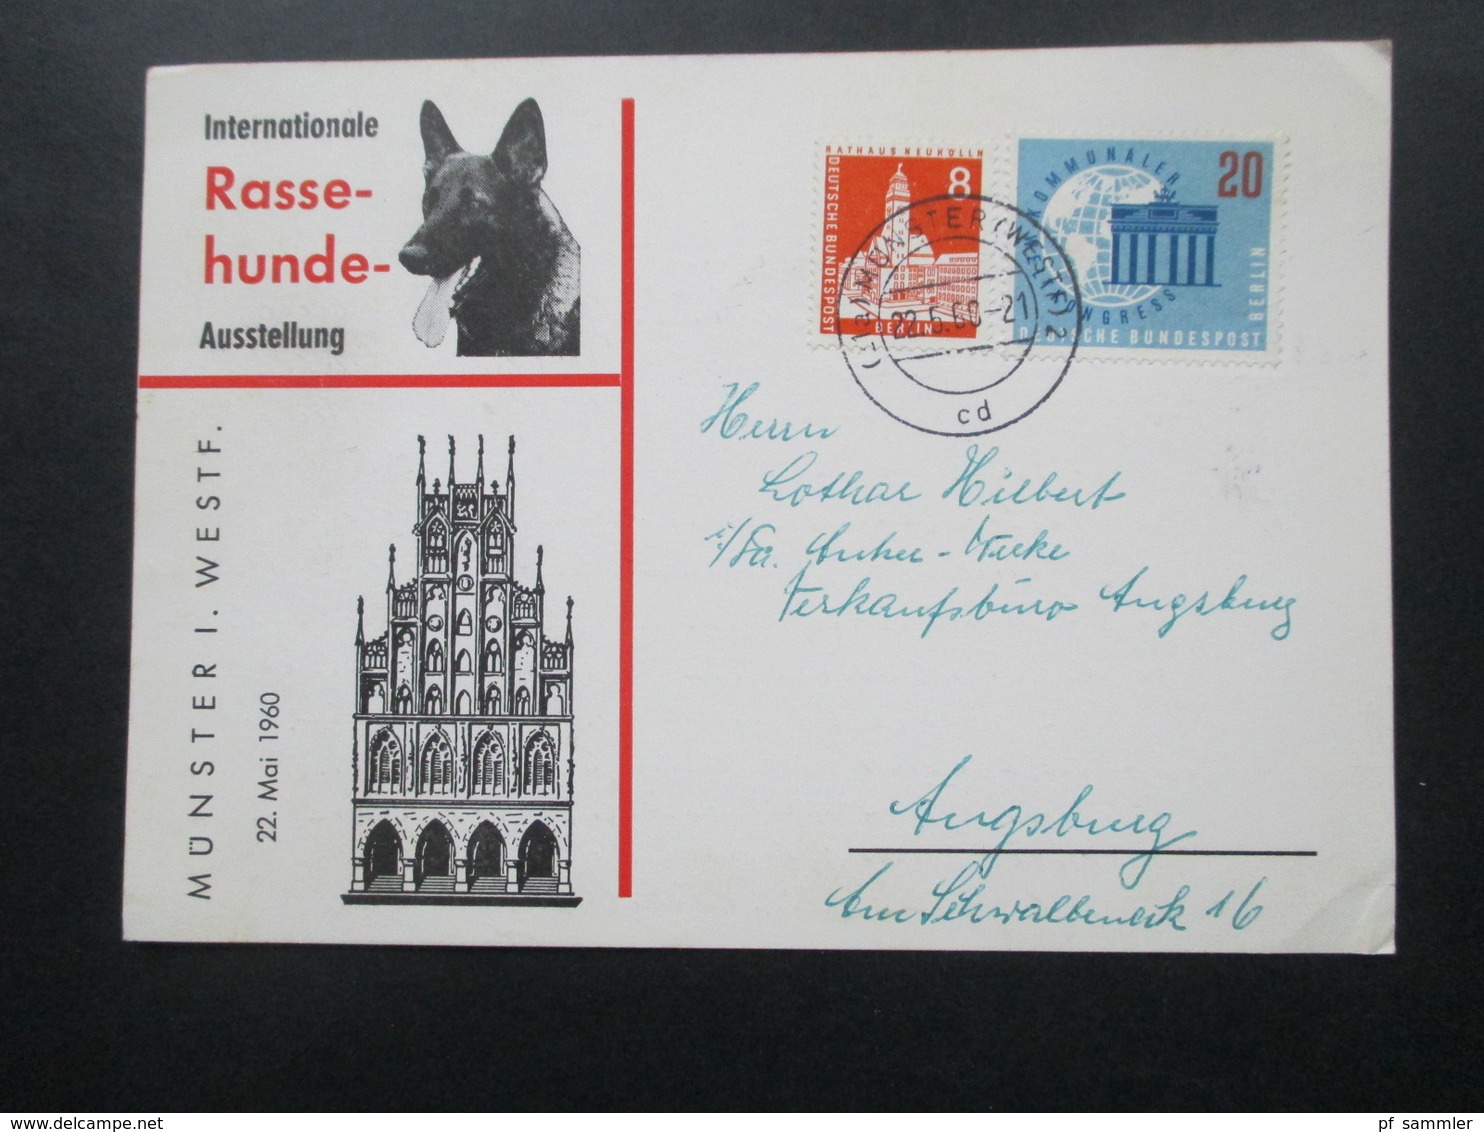 Sonderkarte Internationale Rasse Hunde Ausstellung Münster Westfalen Mit Berlin Marken! Nach Ausgburg Gesendet / Bedarf - Storia Postale